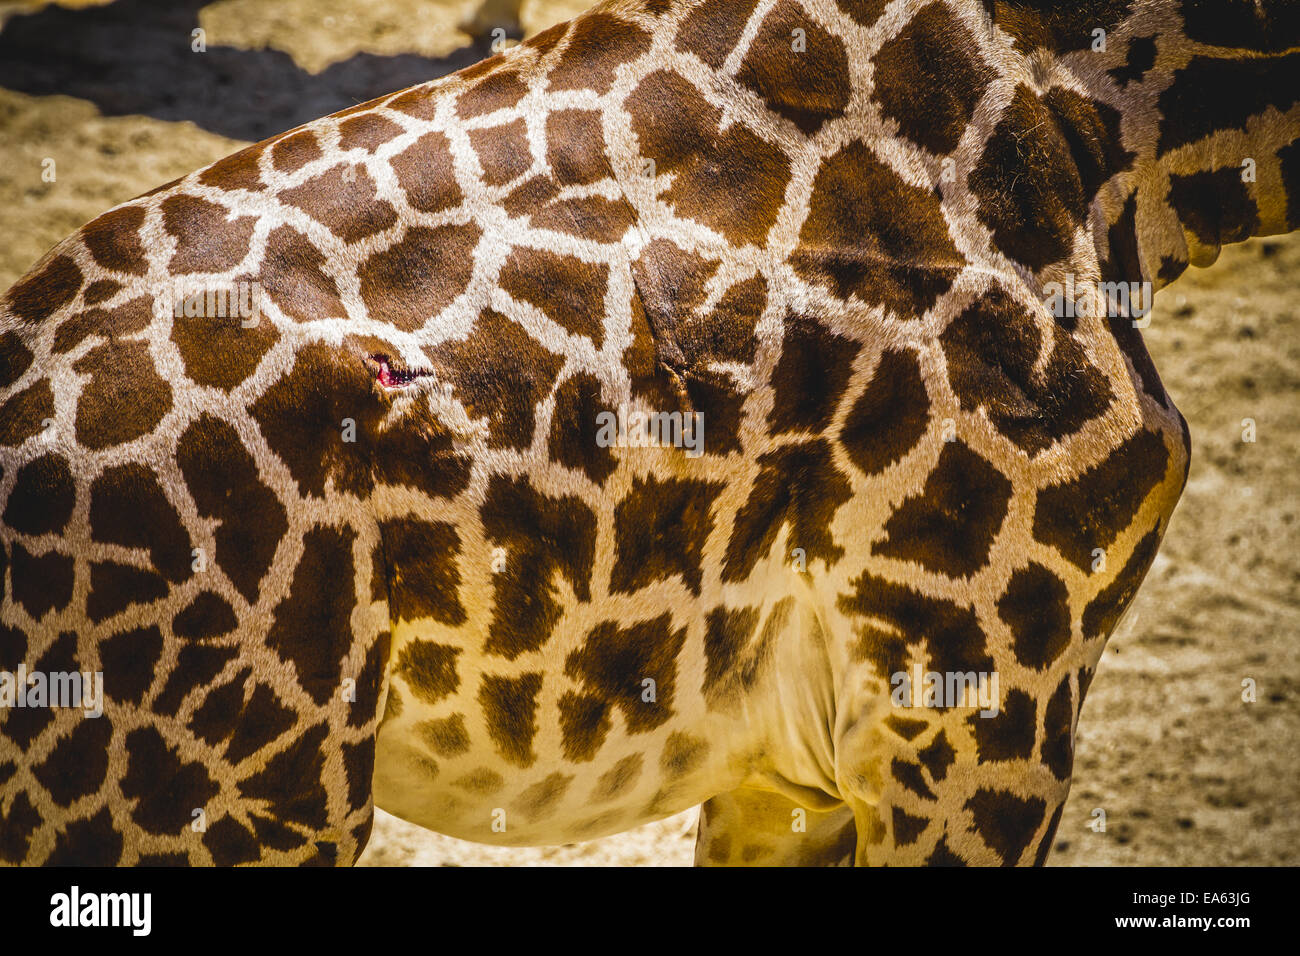 Piel hermosa jirafa en un parque zoológico Foto de stock